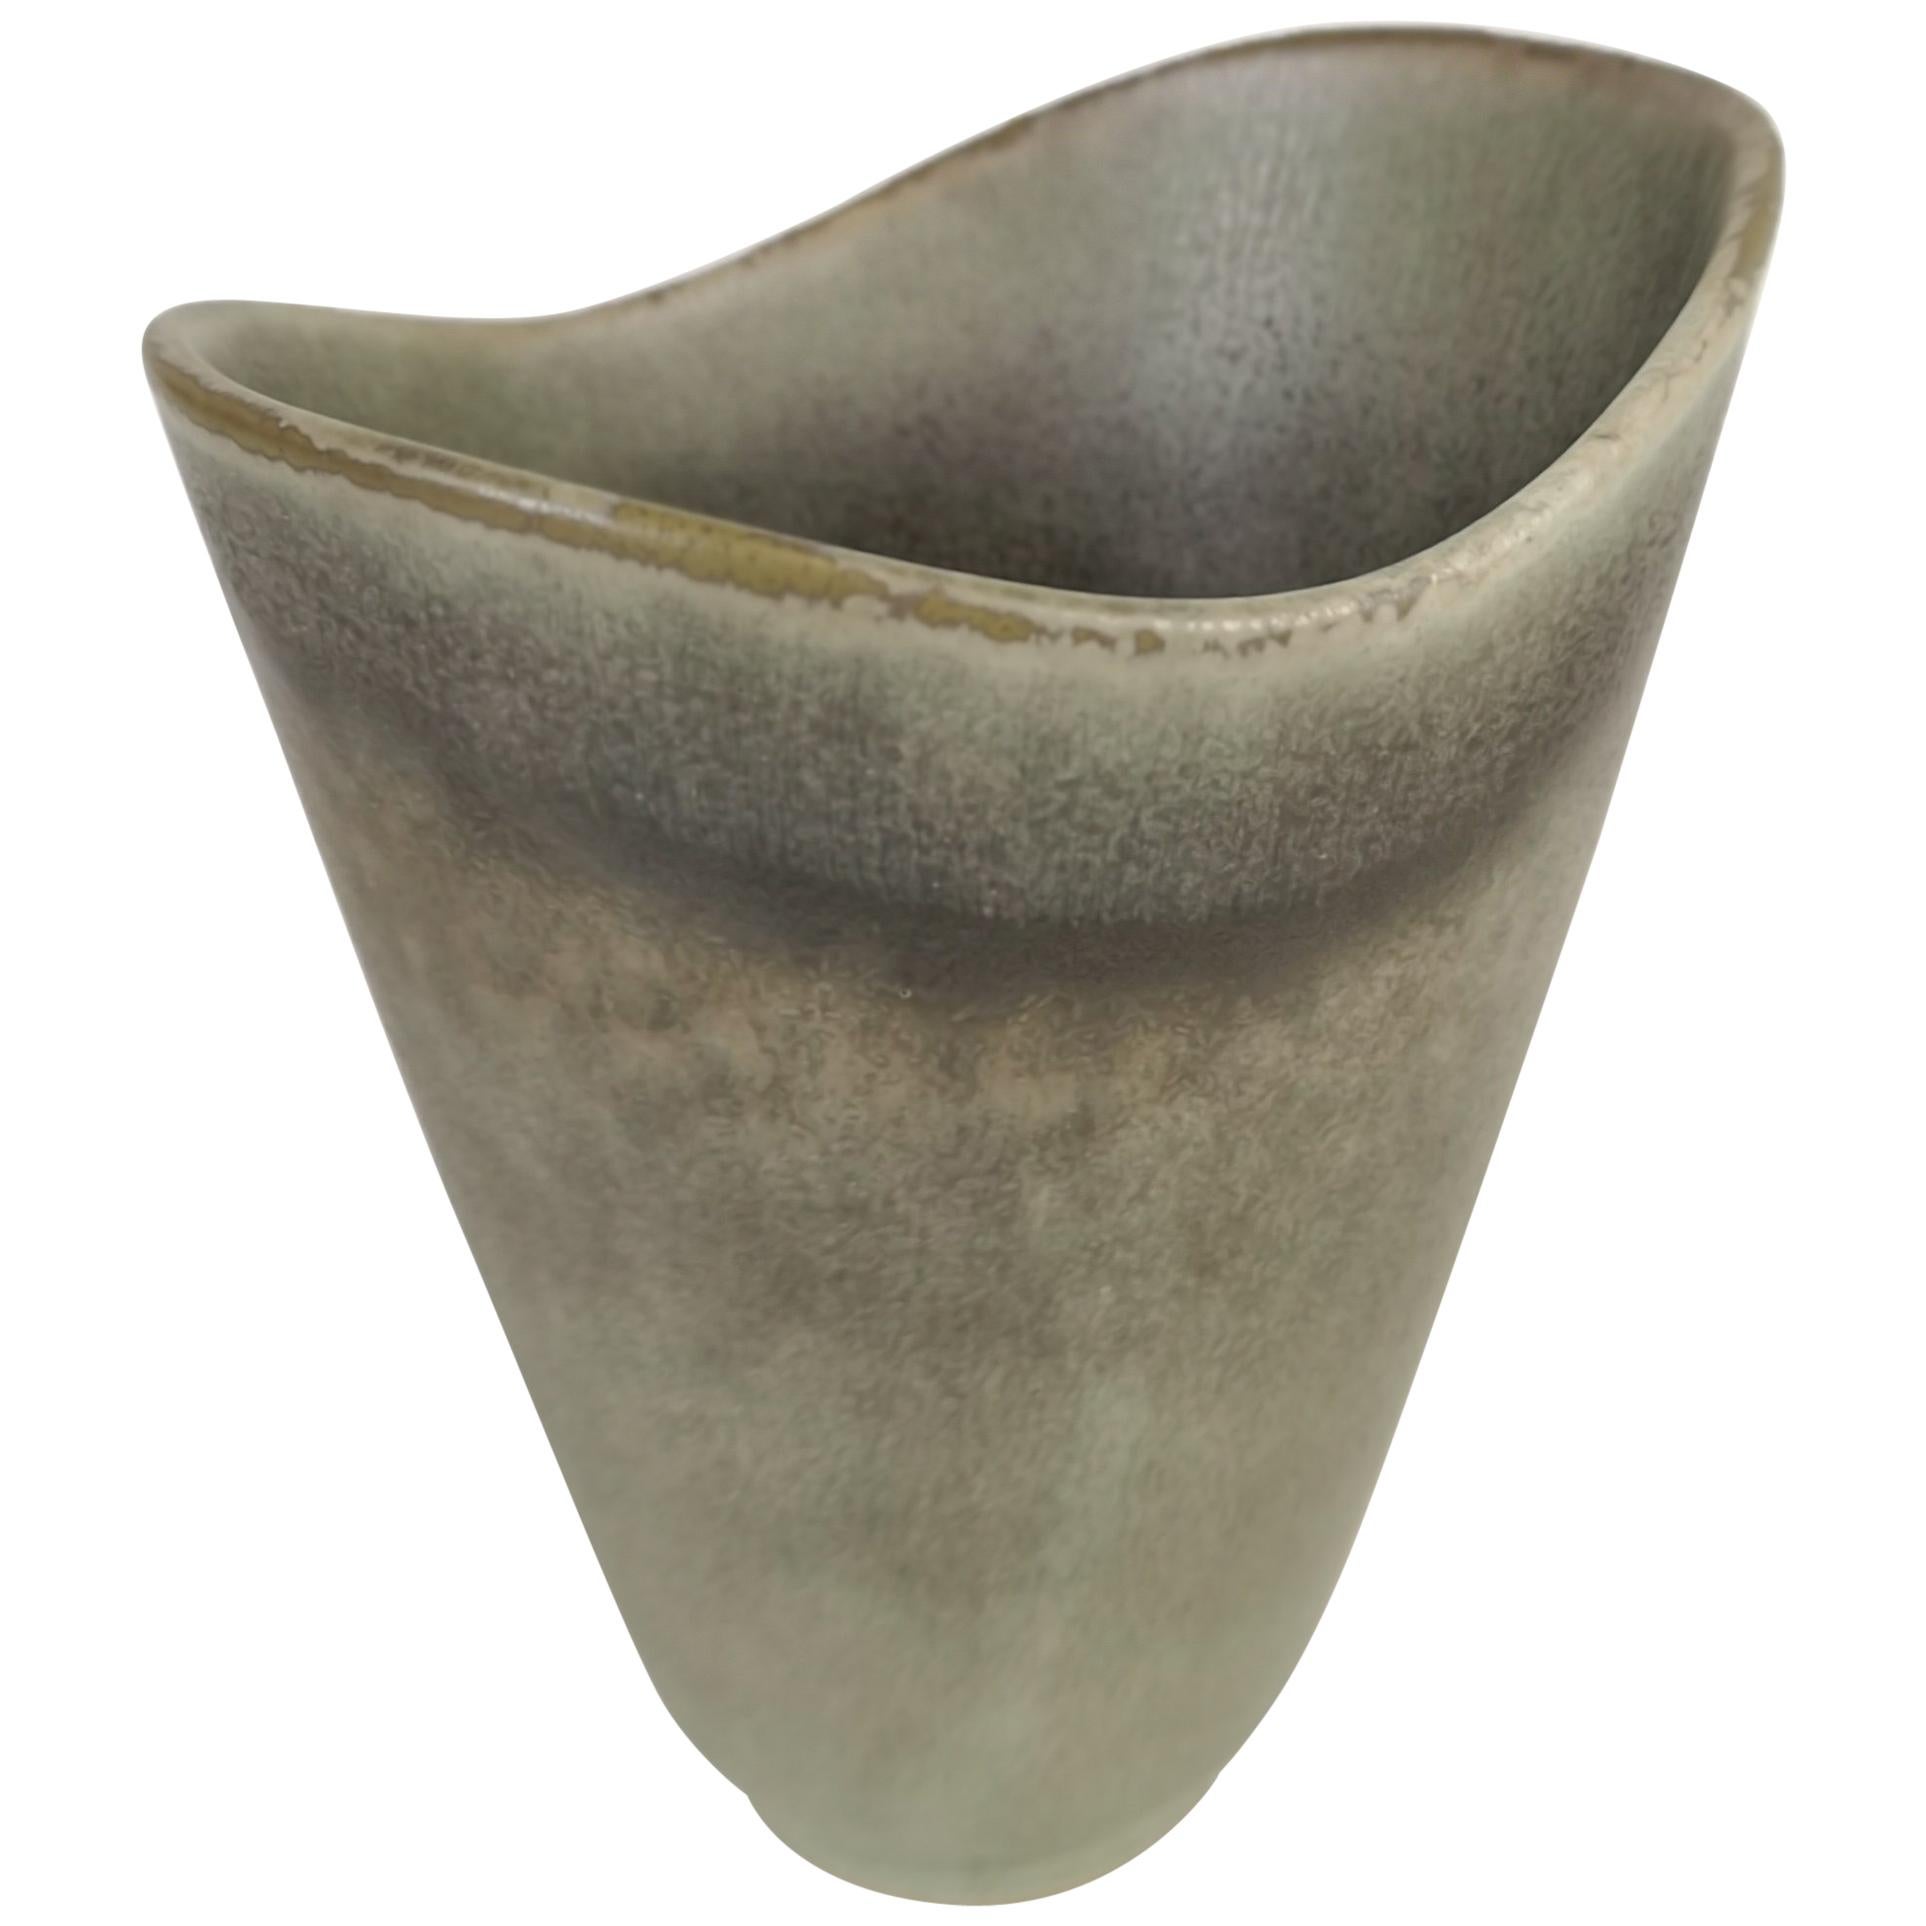 Midcentury Ceramic Vase by Carl-Harry Stålhane for Rörstrand, Sweden, 1950s